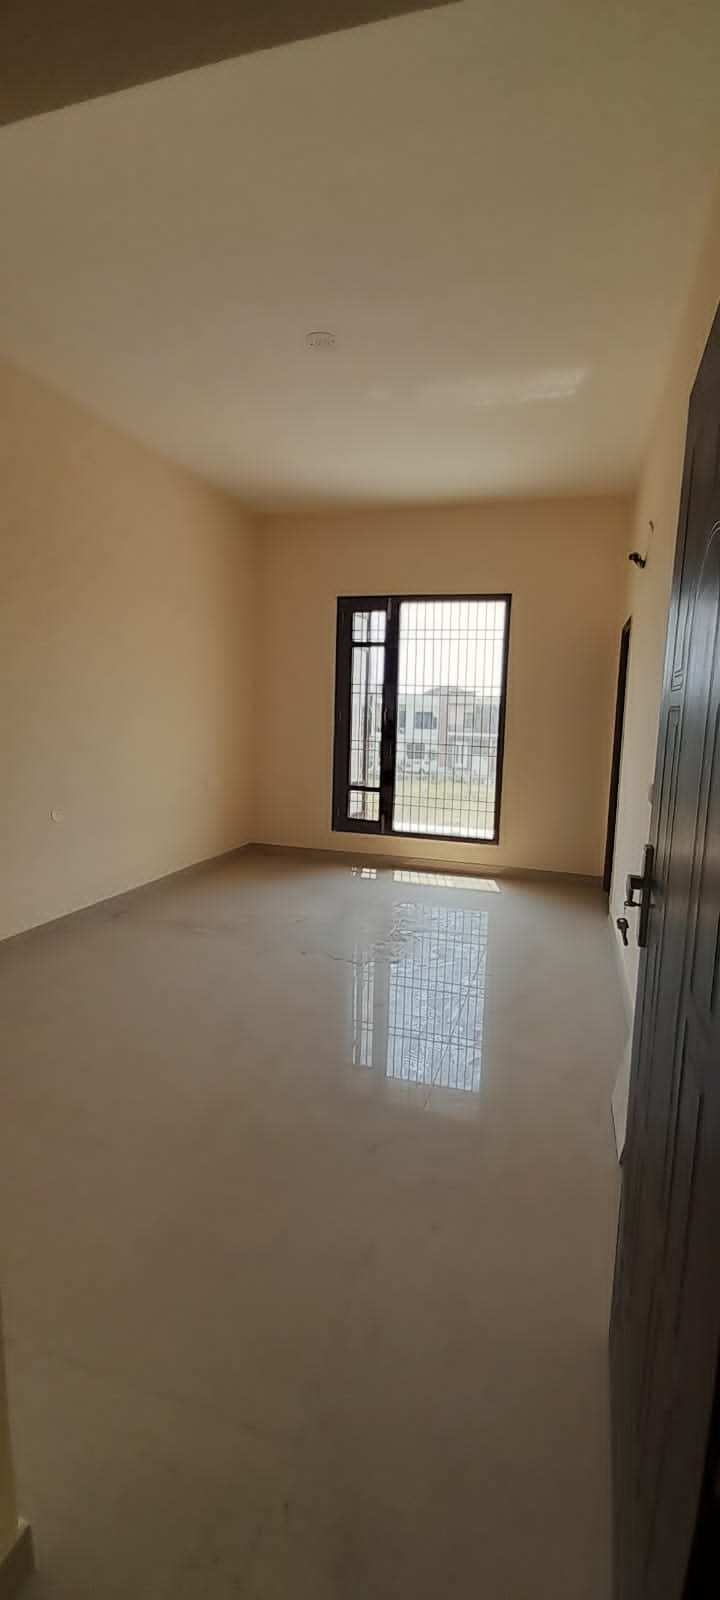 4 Bedroom Set House For Sale in 8.69 Marla in Jalandhar